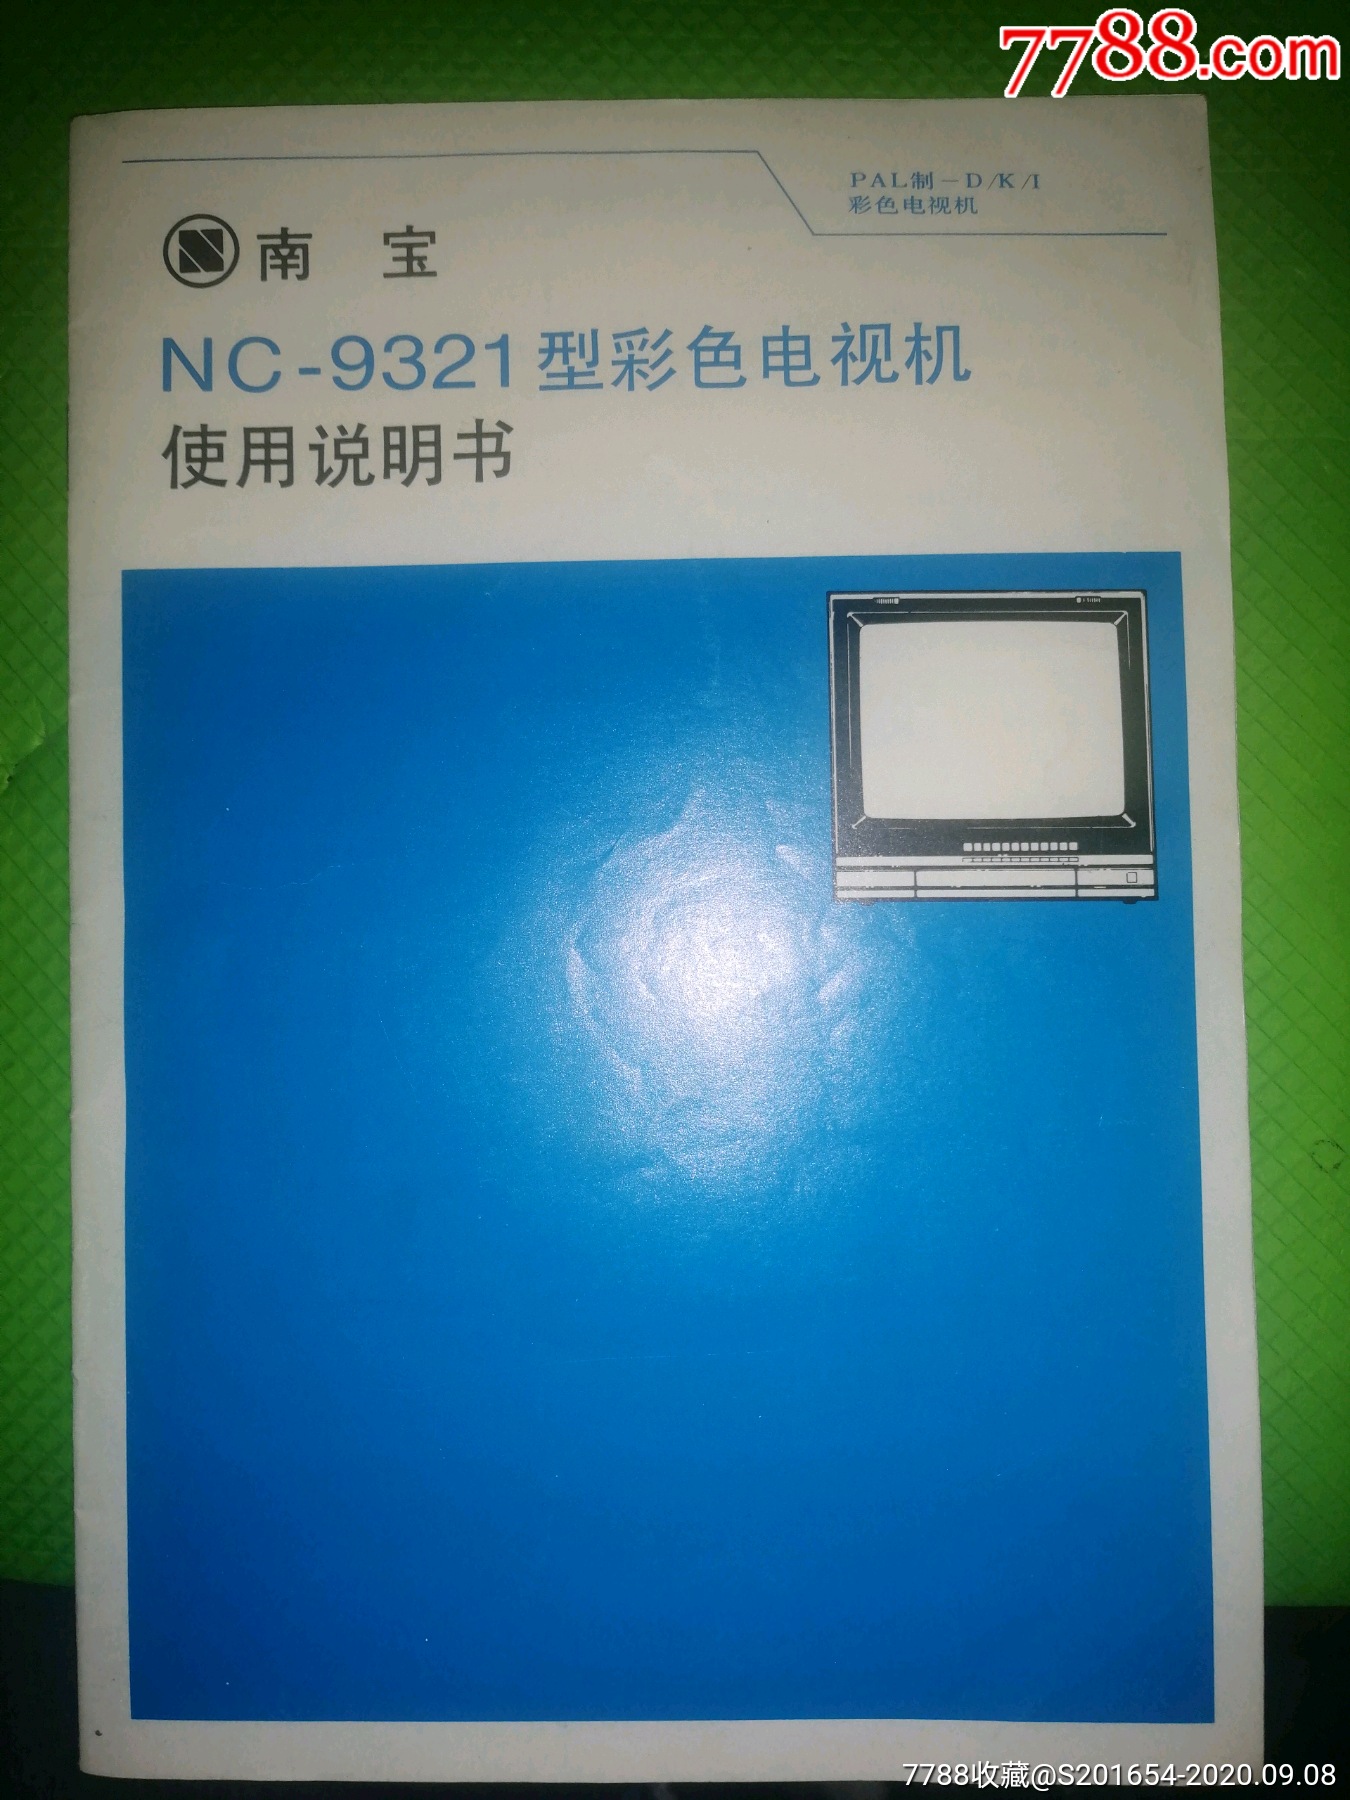 南宝nc-9321型彩色电视机使用说明书